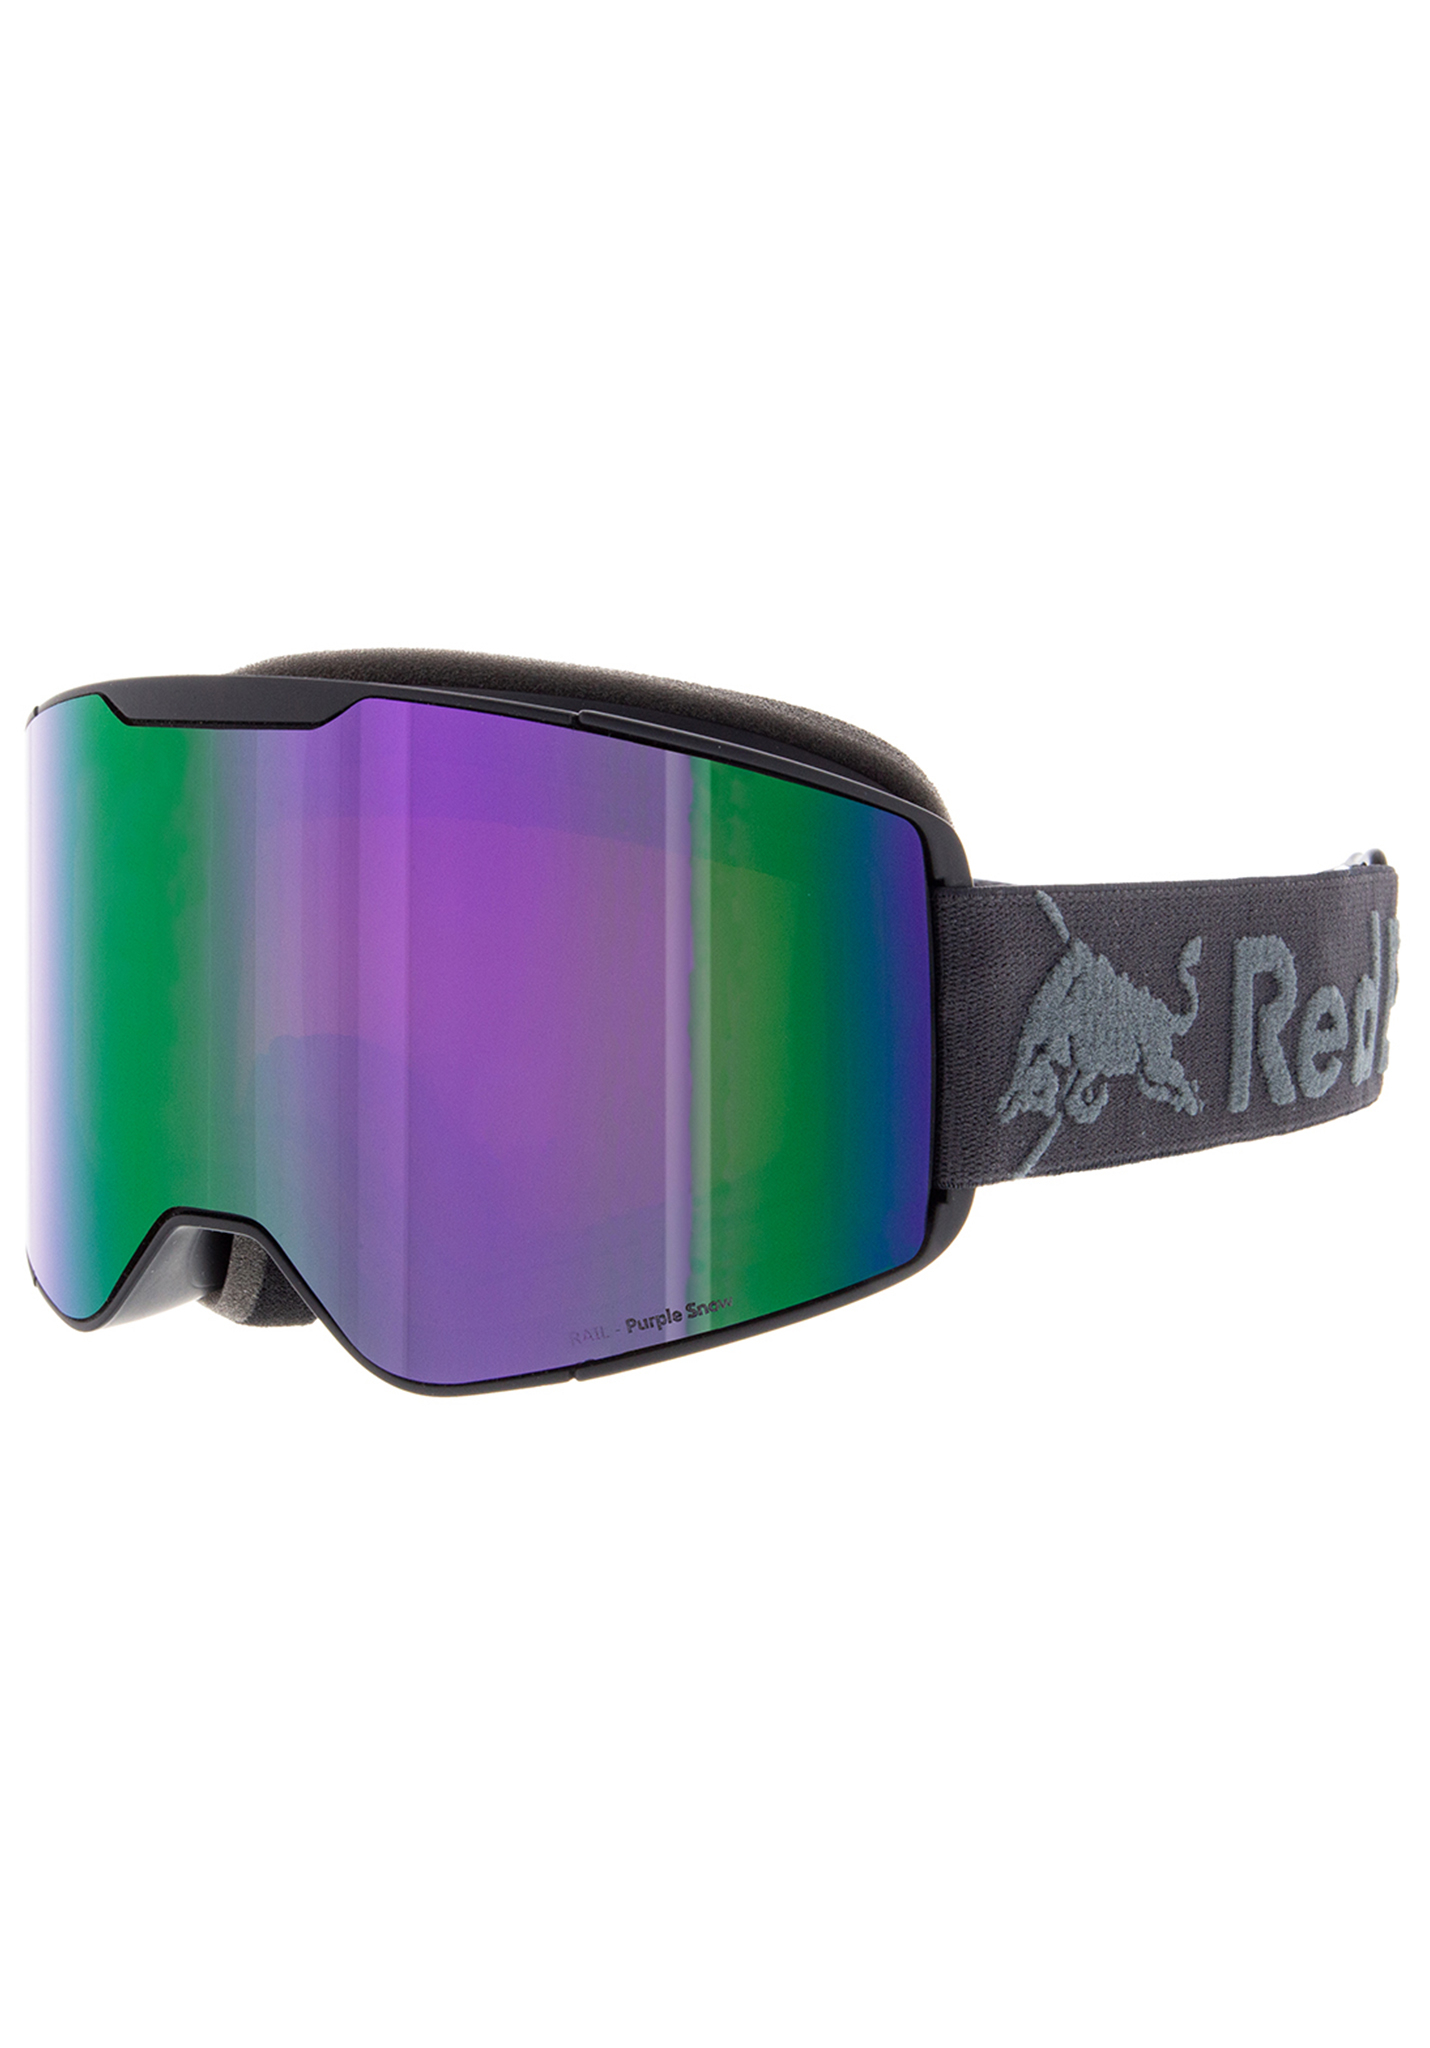 Red Bull SPECT Eyewear Rail Snowboardbrillen anthrazit/violetter schnee - braun mit violett One Size